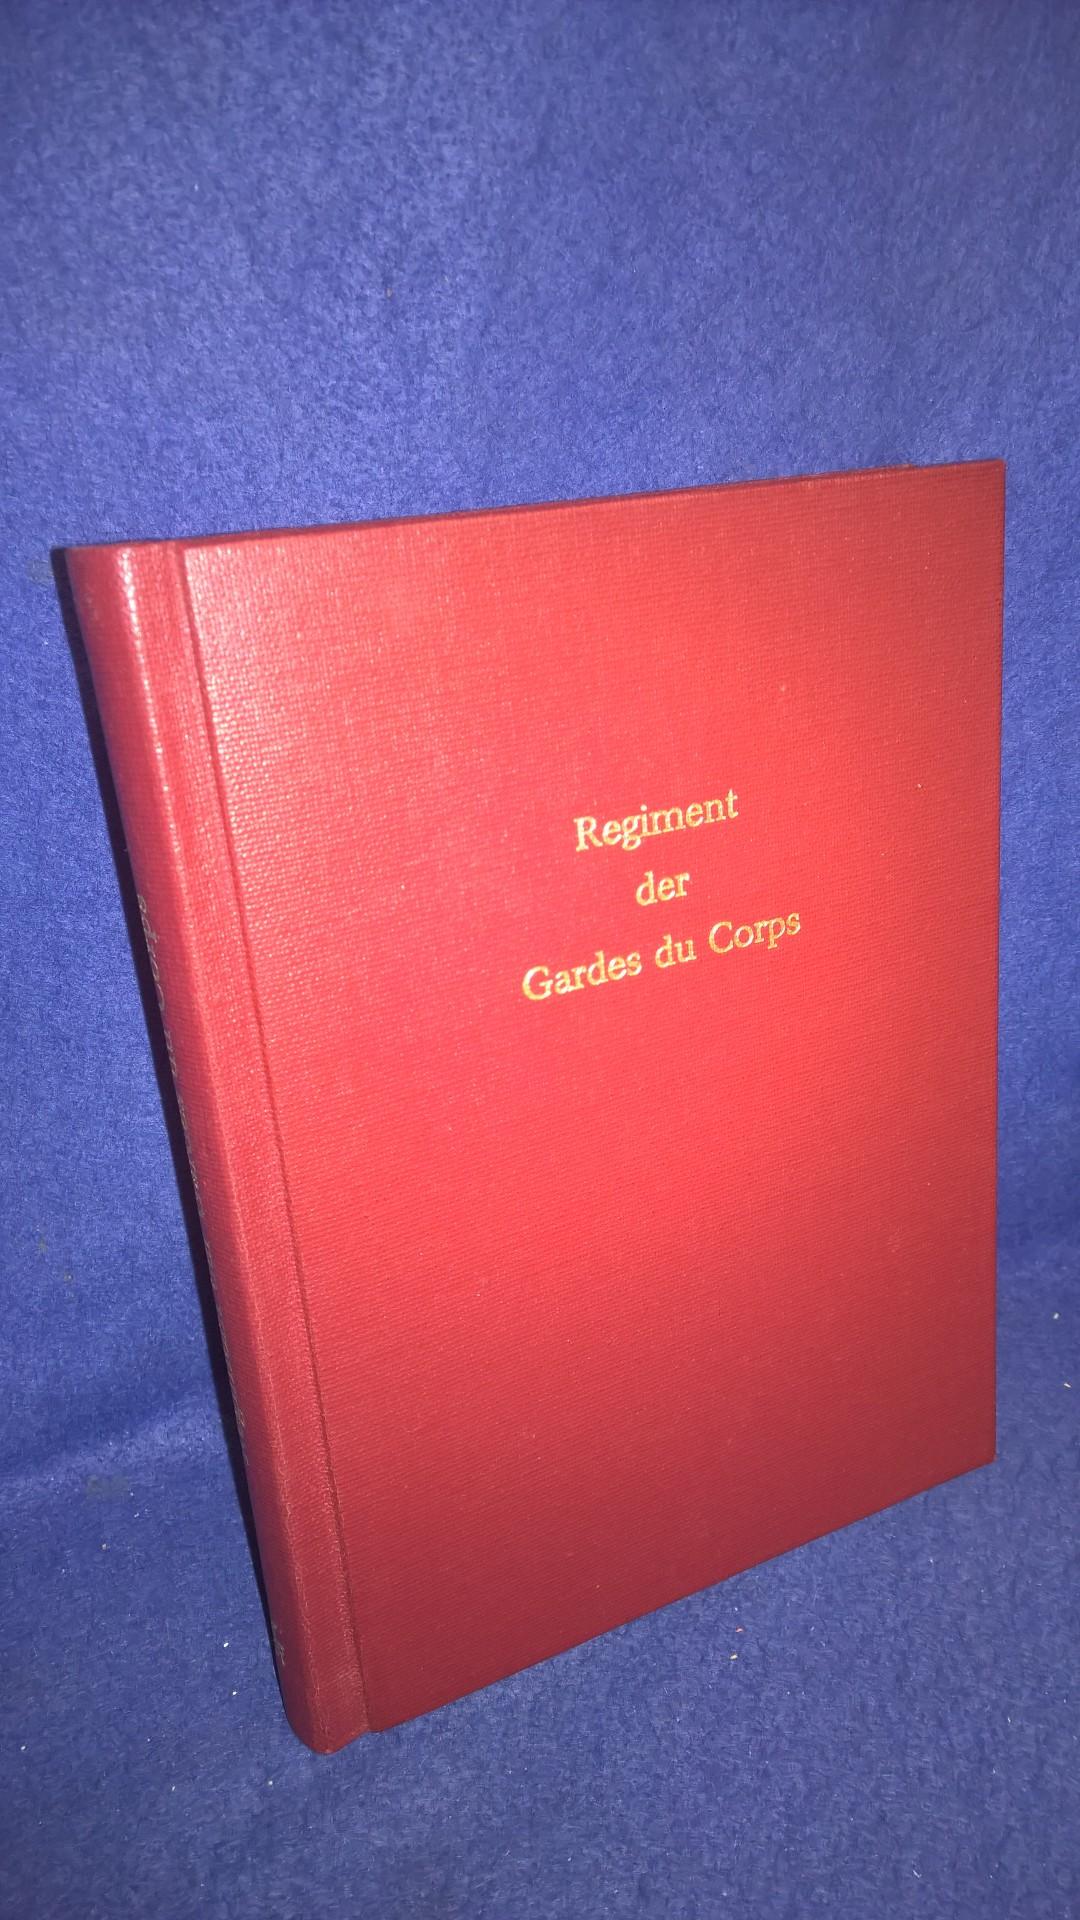 Übersicht der Geschichte des königlichen Regiments der Gardes du Corps von 1740 bis 1890. Nachdruck der Orginal-Ausgabe!